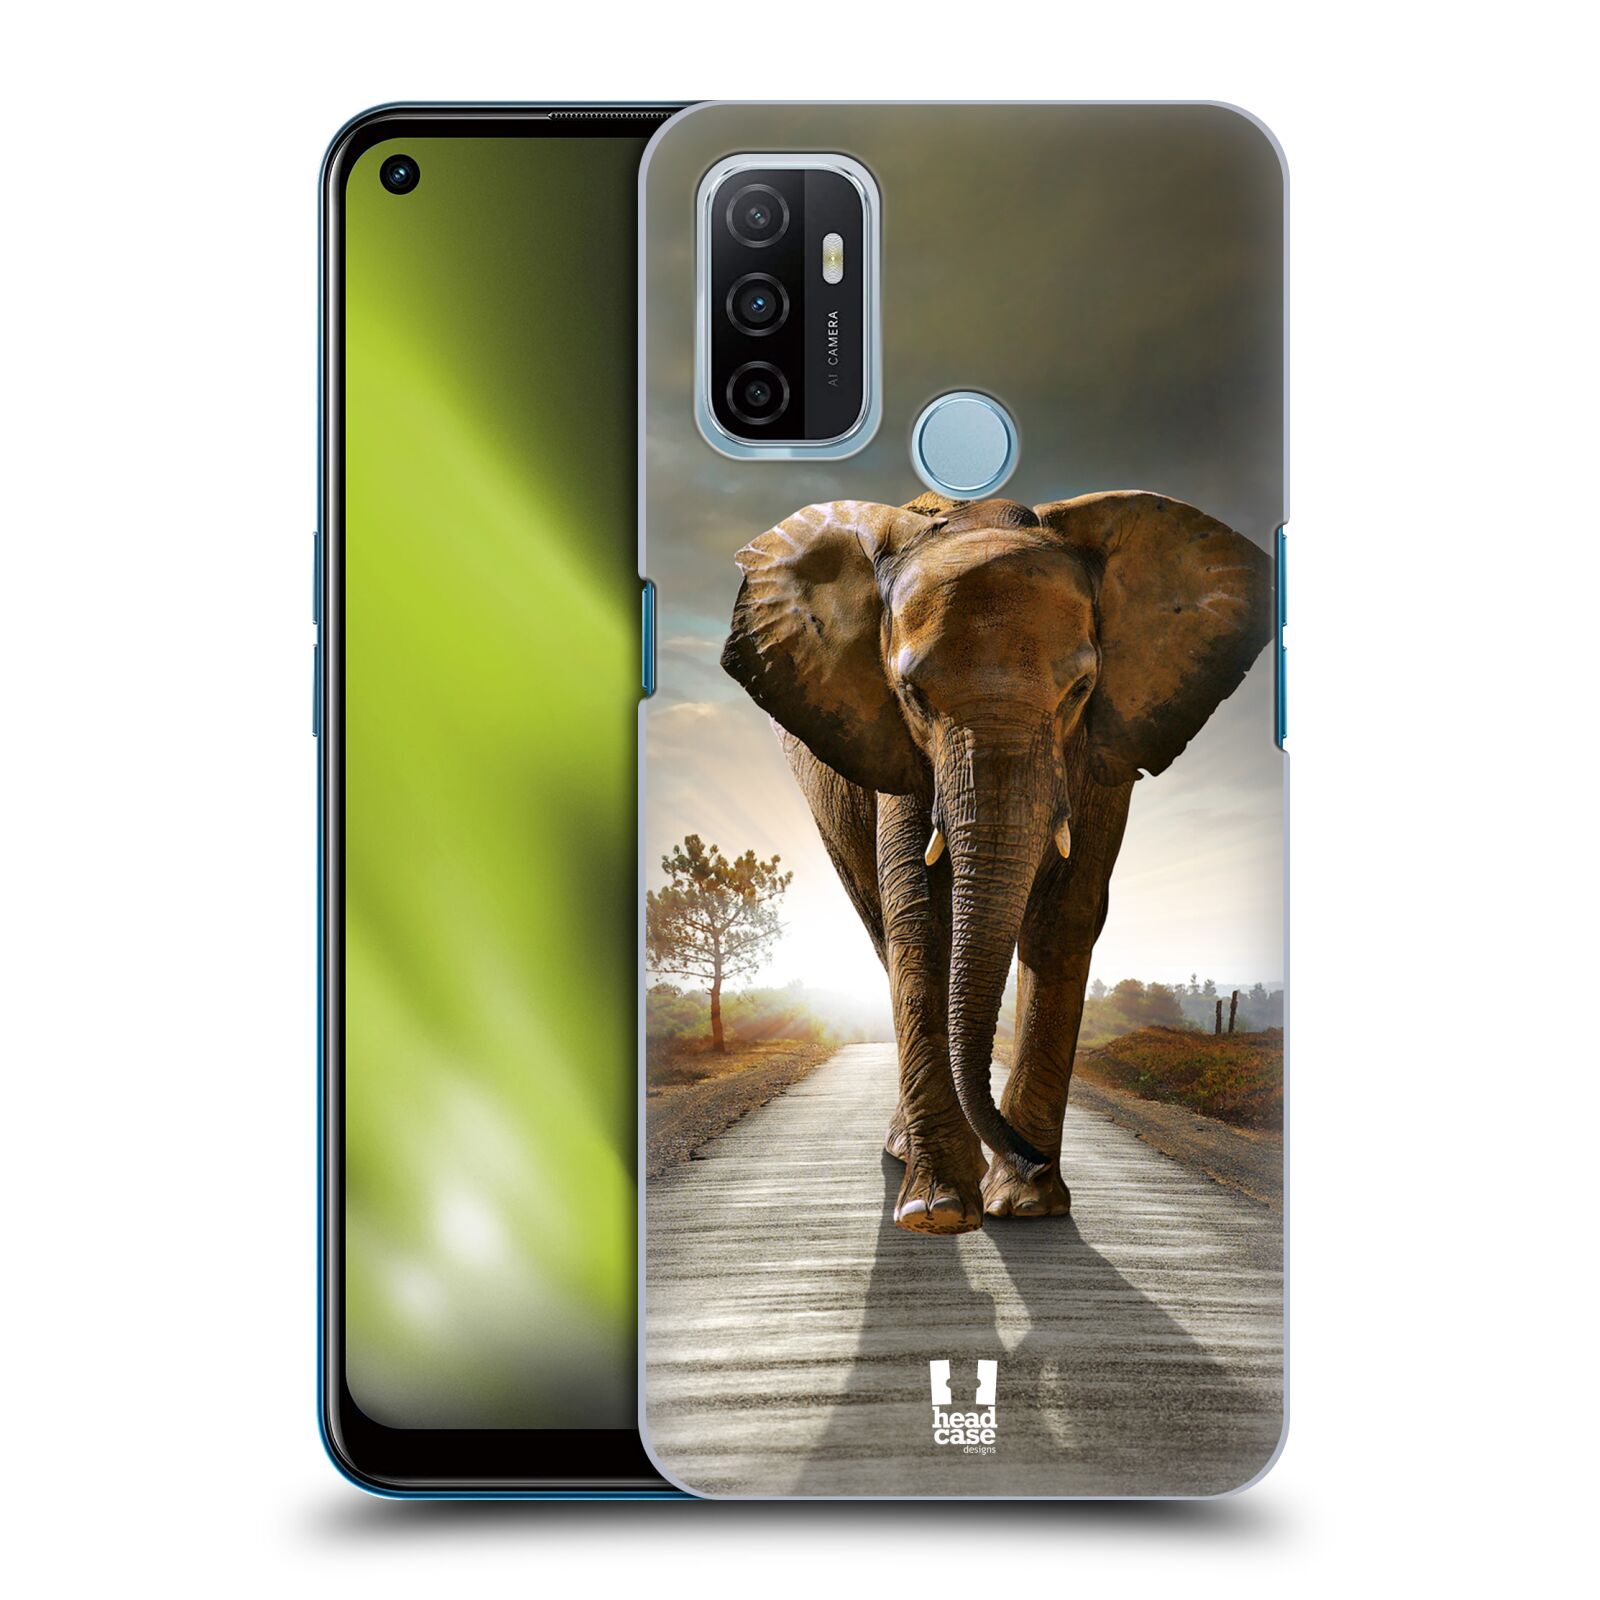 Zadní obal pro mobil Oppo A53 / A53s - HEAD CASE - Svět zvířat kráčející slon